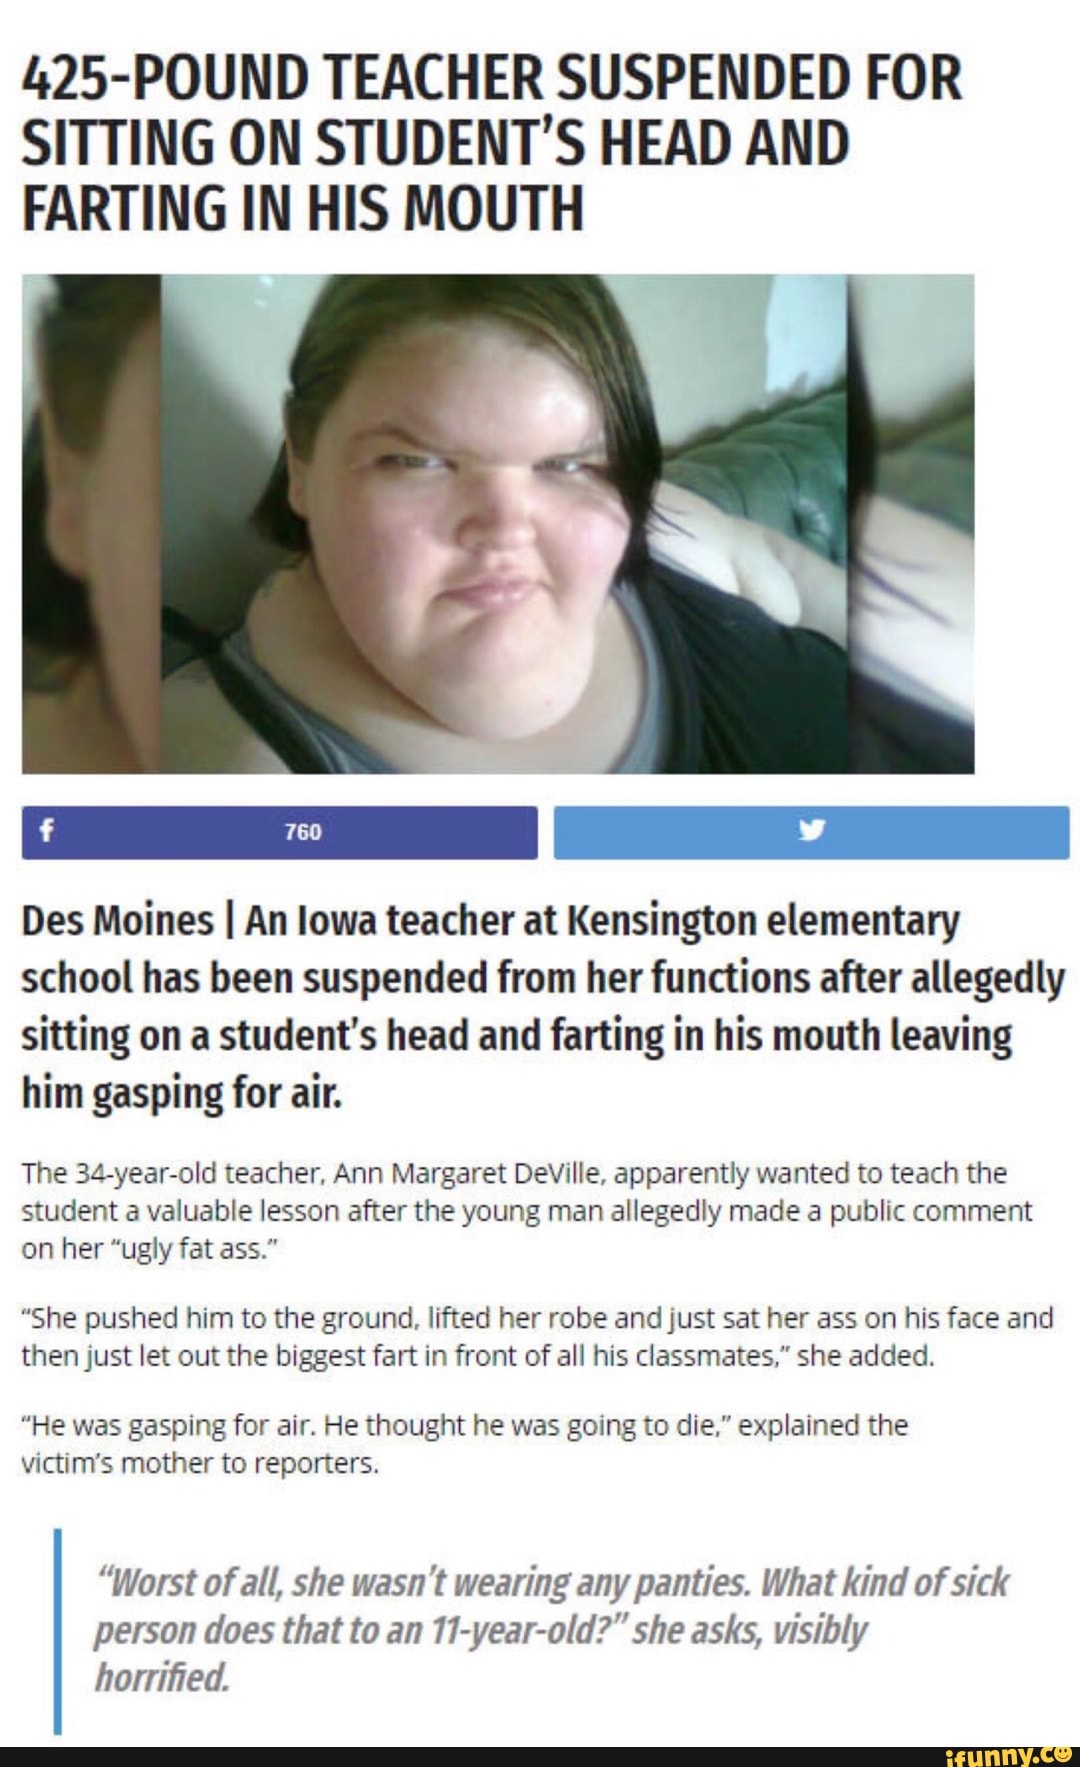 Fat ass teacher